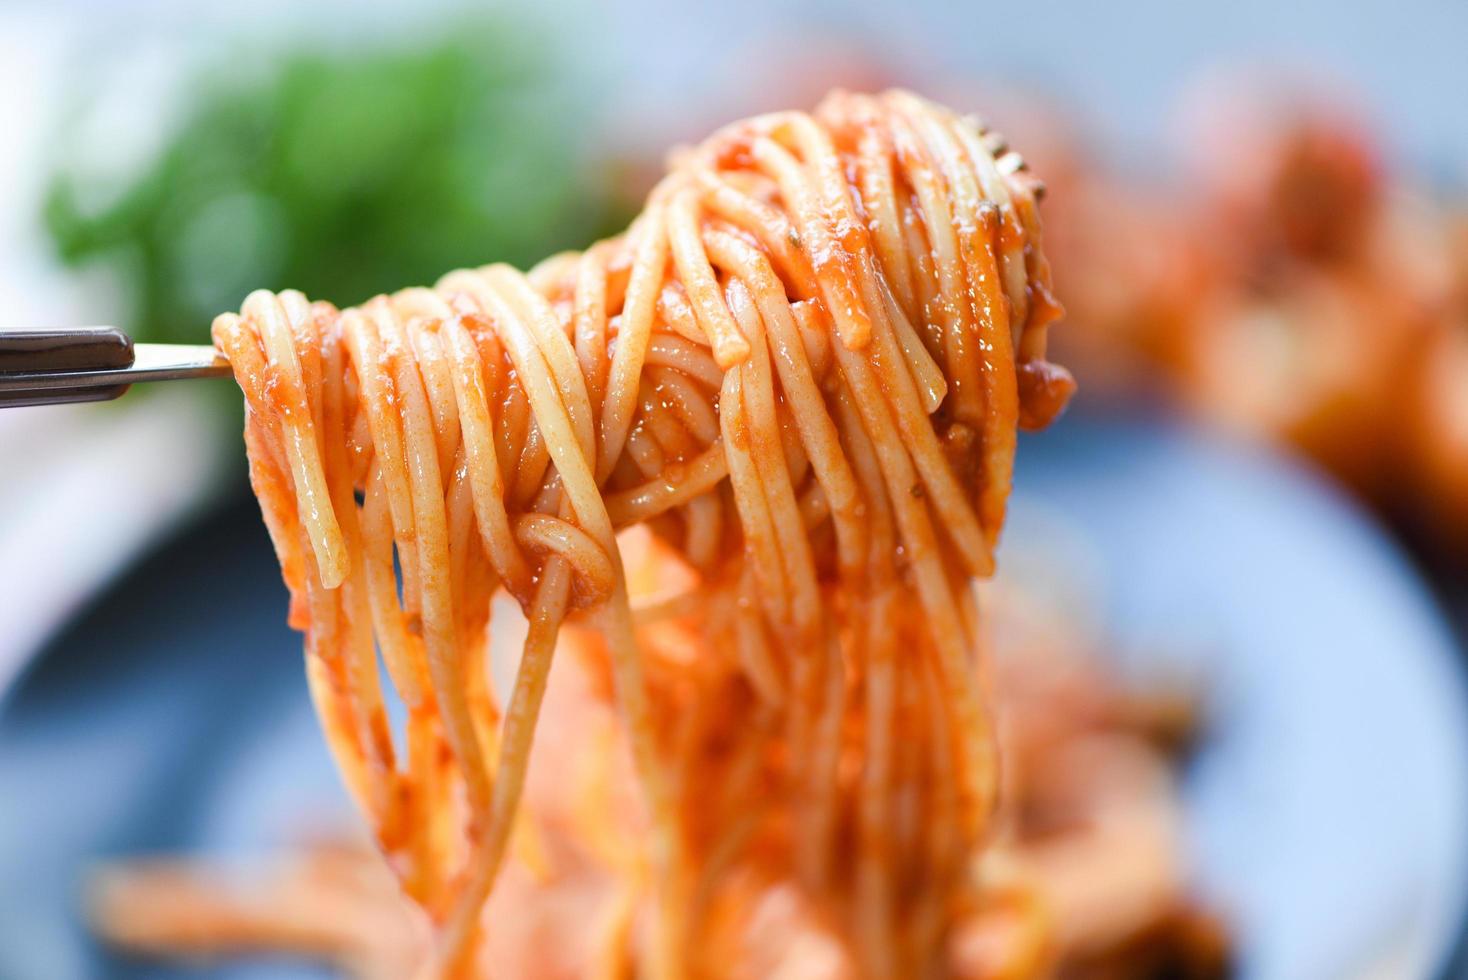 spaghetti bolognaise pâtes italiennes au restaurant cuisine italienne et concept de menu - spaghetti à la fourchette photo